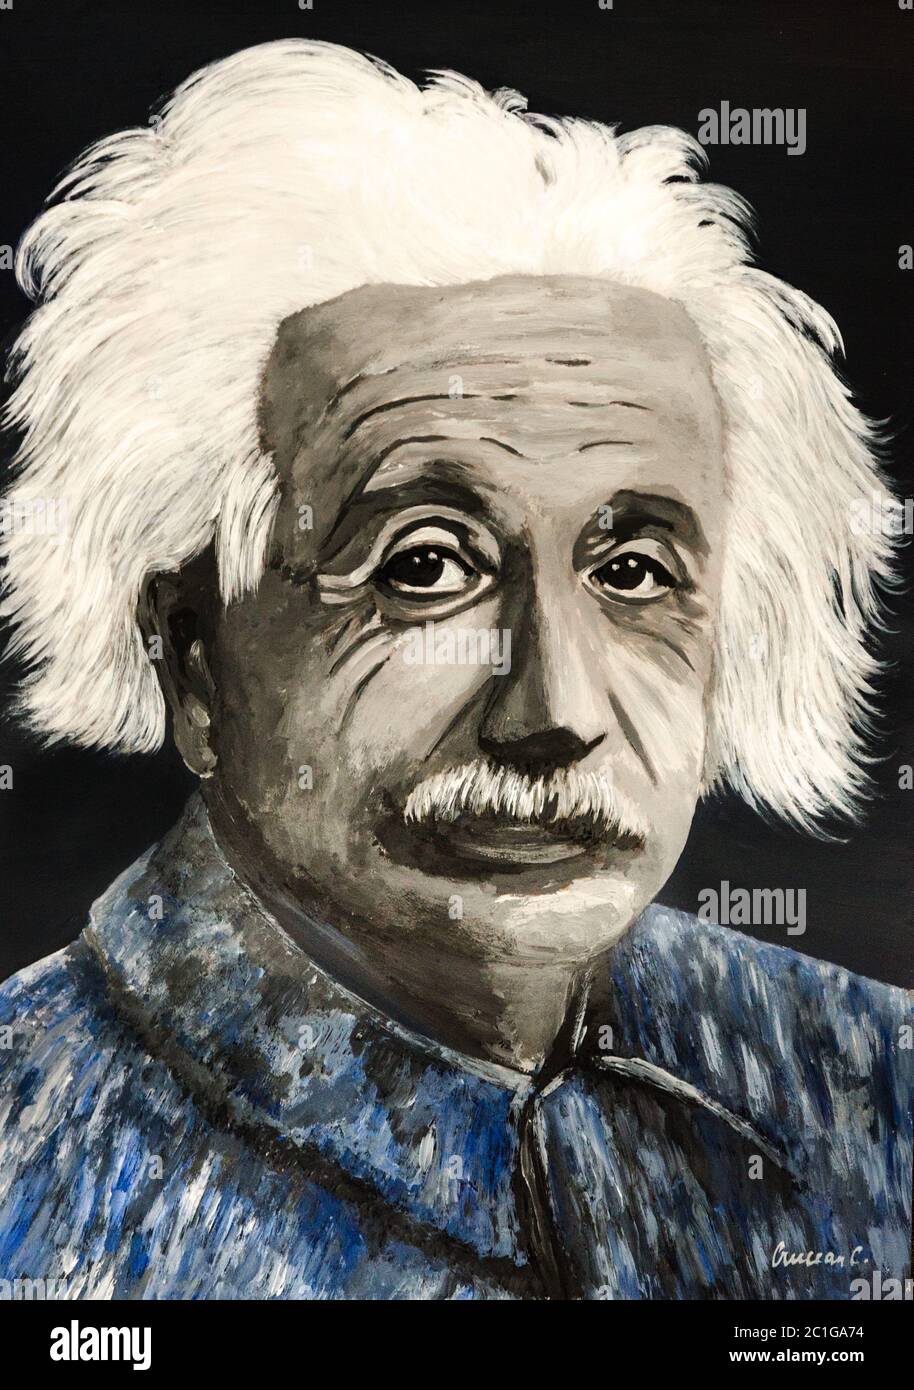 Albert Einstein' portrait Stock Photo